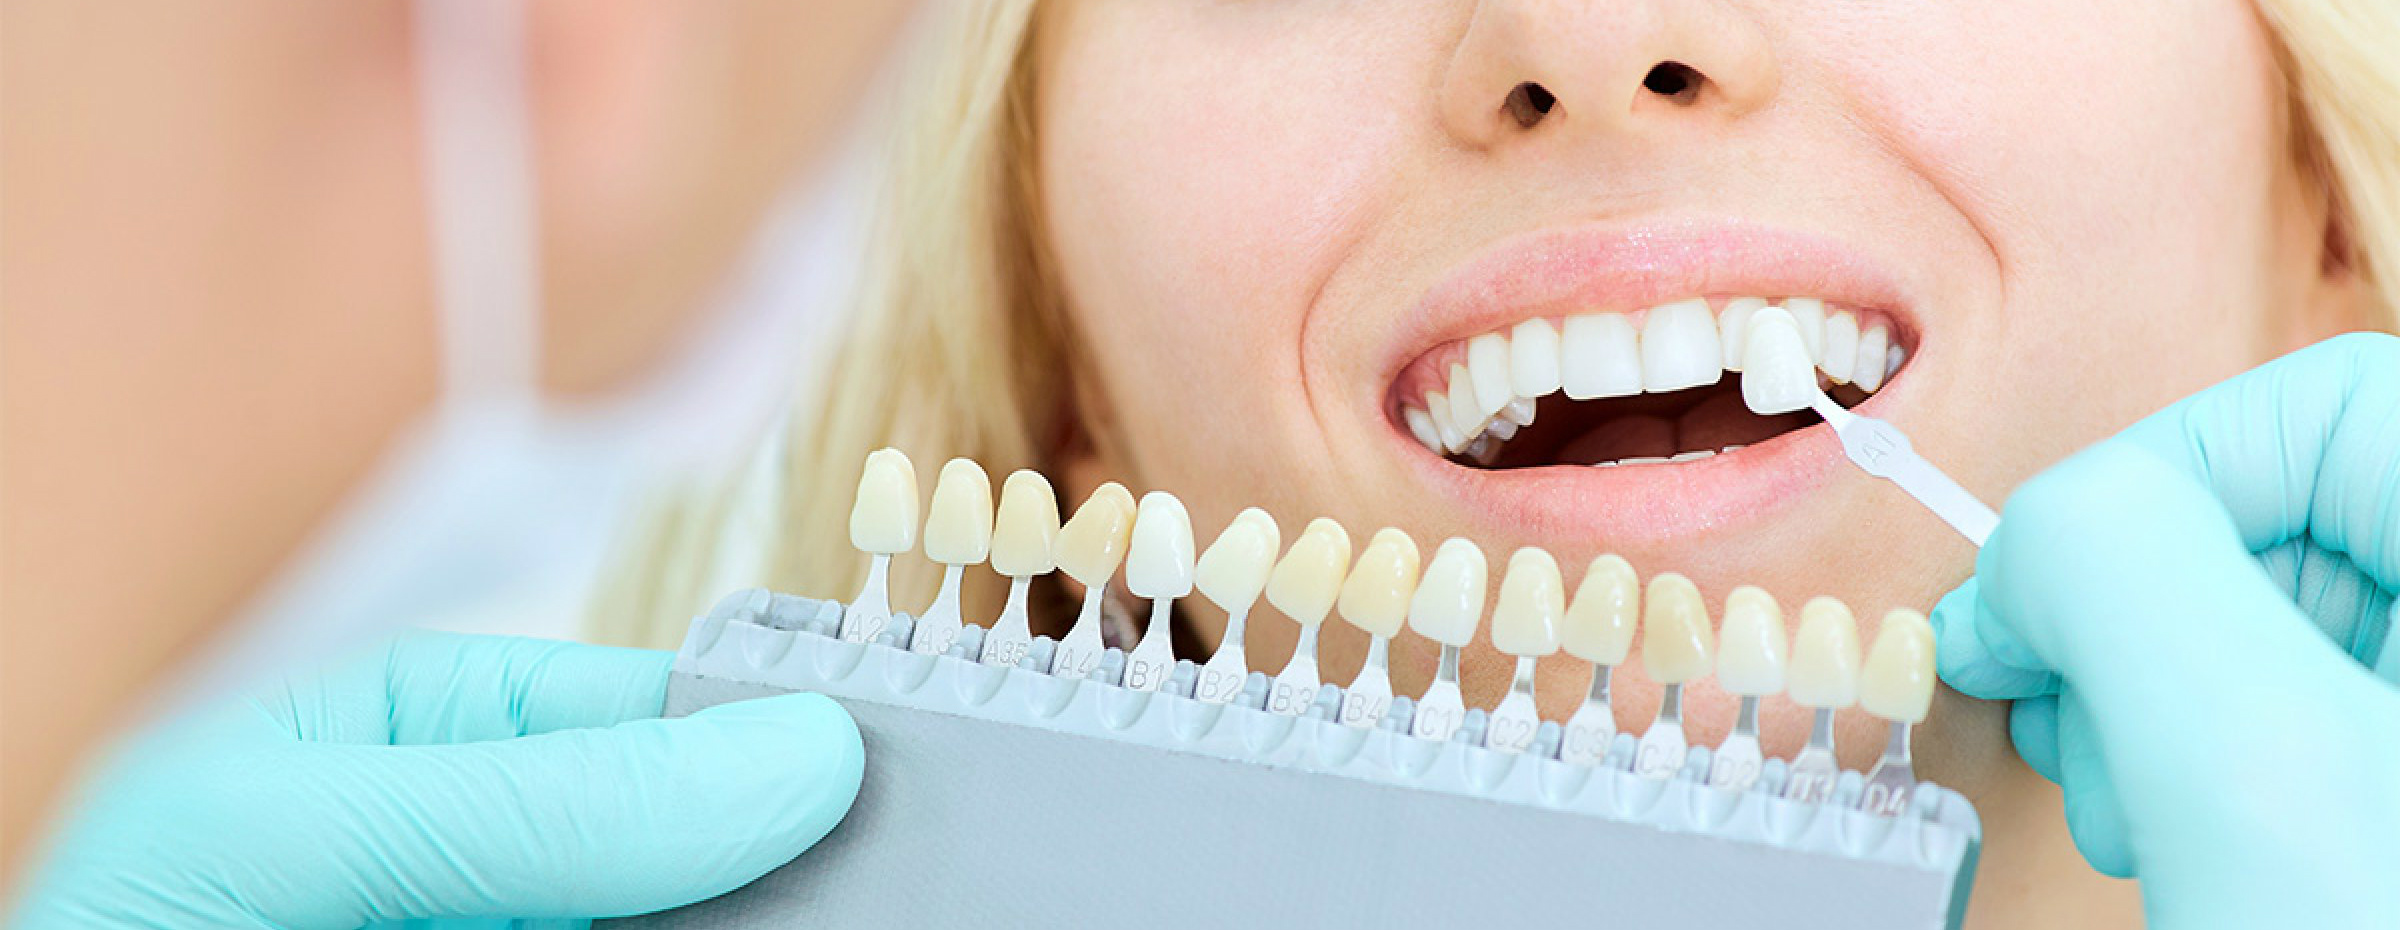 Эстетическая реставрация зубов в нашей стоматологии